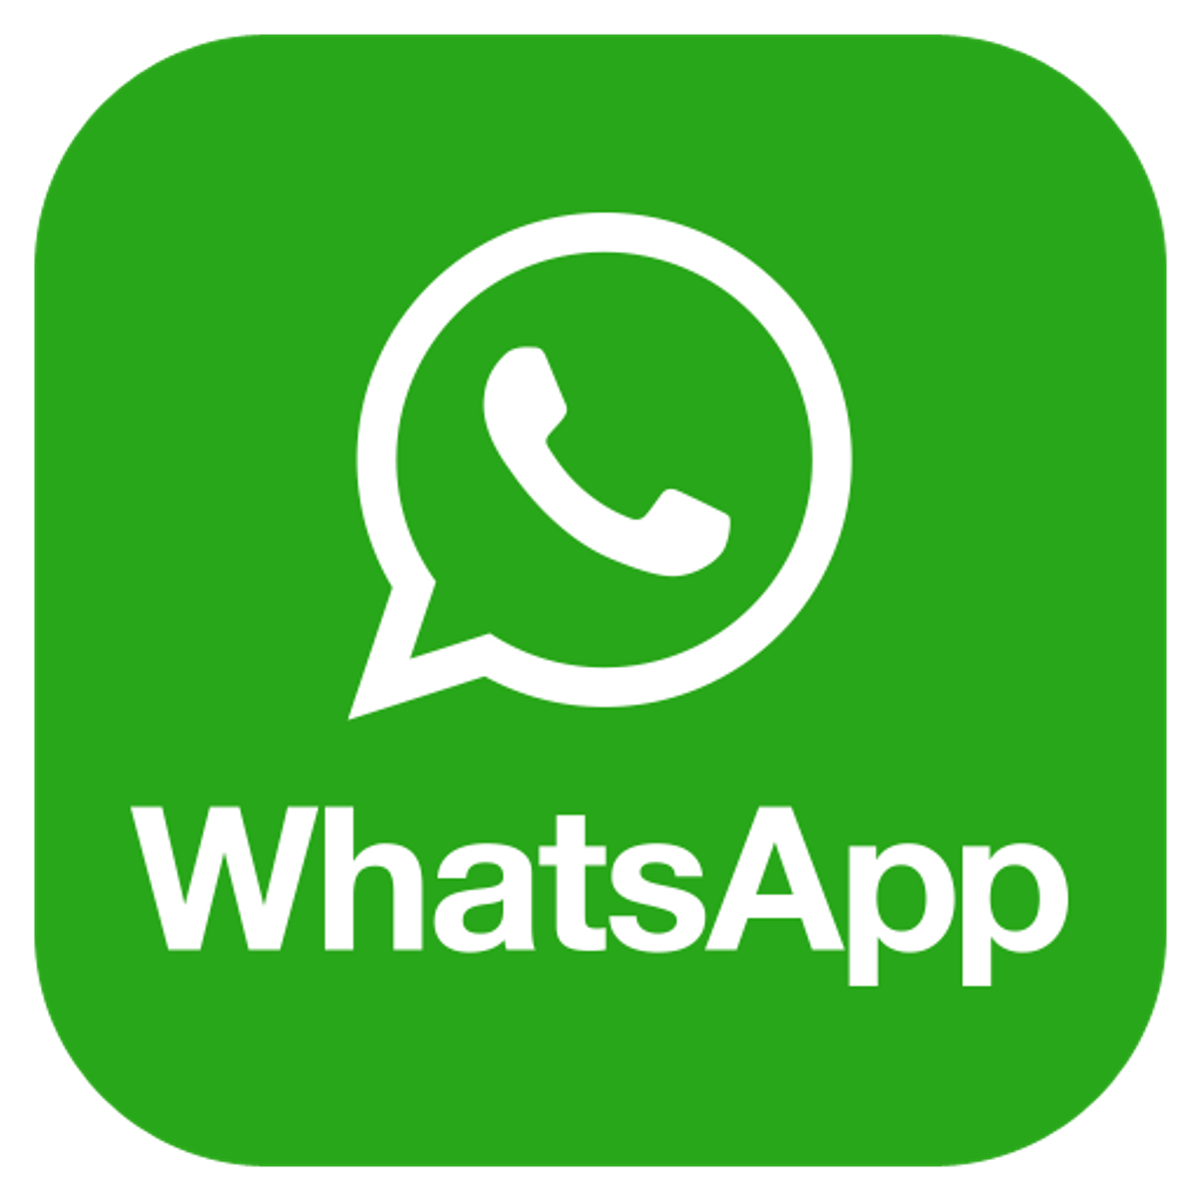 تحميل برنامج Whatsapp للكمبيوتر و للاب توب احدث اصدار Whats App 64 32